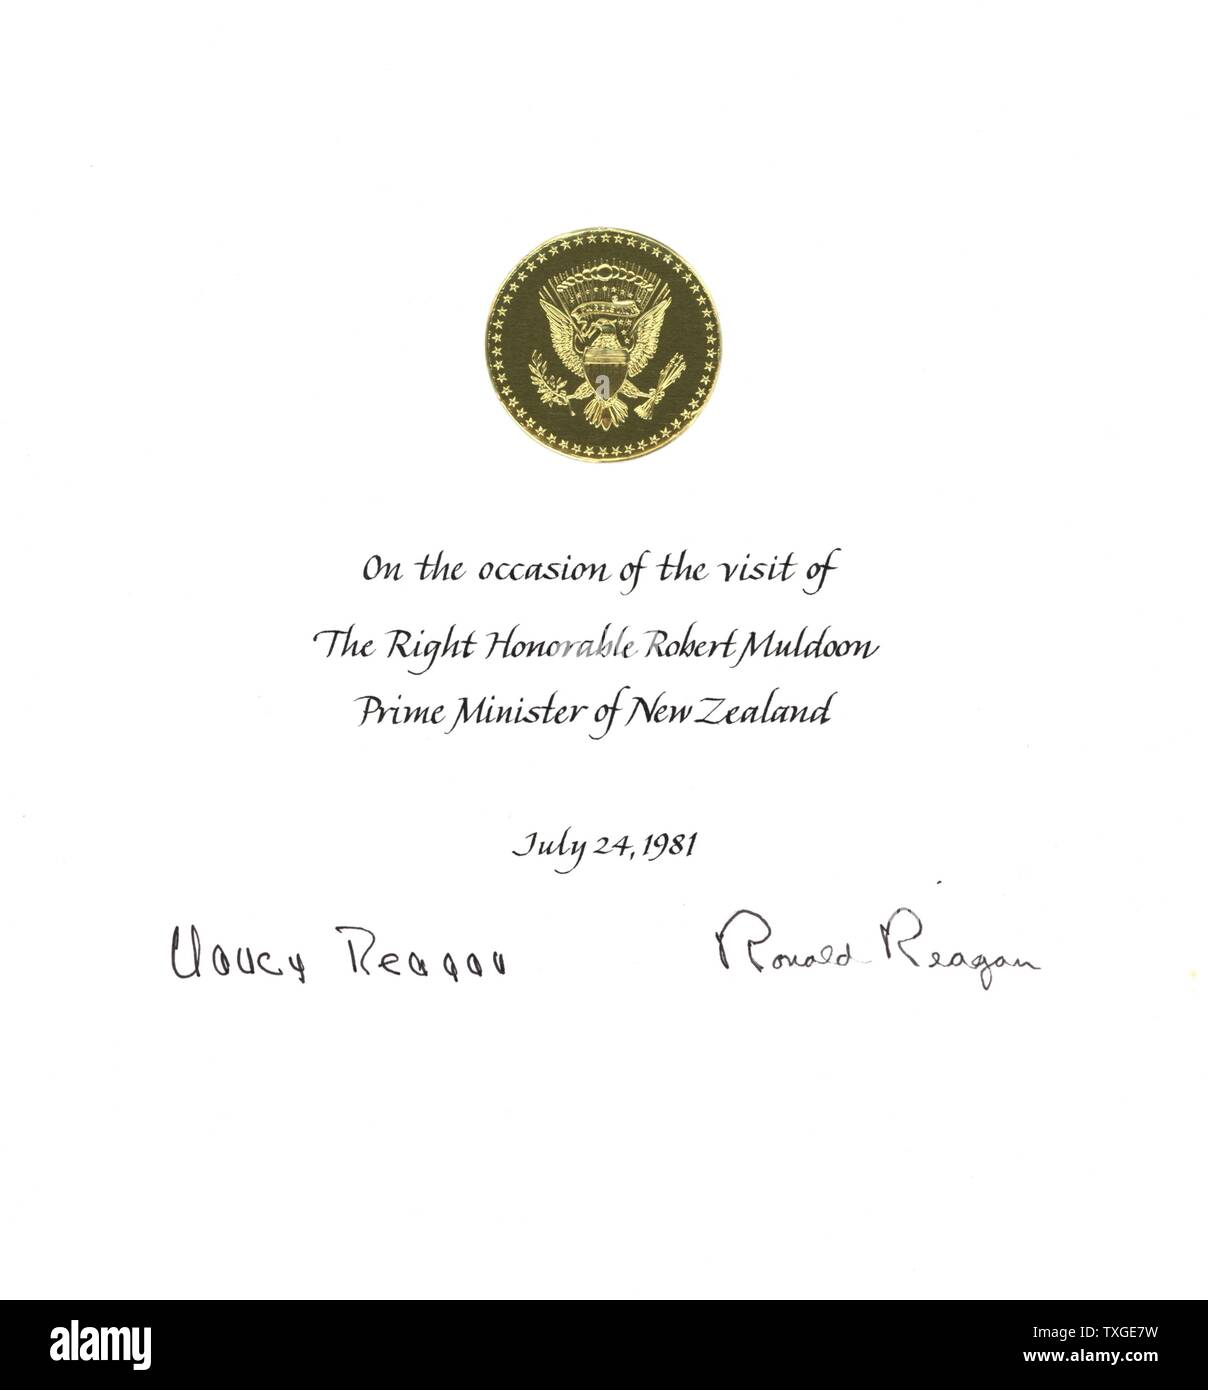 Ein Zertifikat zum Gedenken an Premierminister Robert Muldoon Besuch bei Präsident Ronald Reagan und First Lady Nancy Reagan. Datierte 1981 Stockfoto